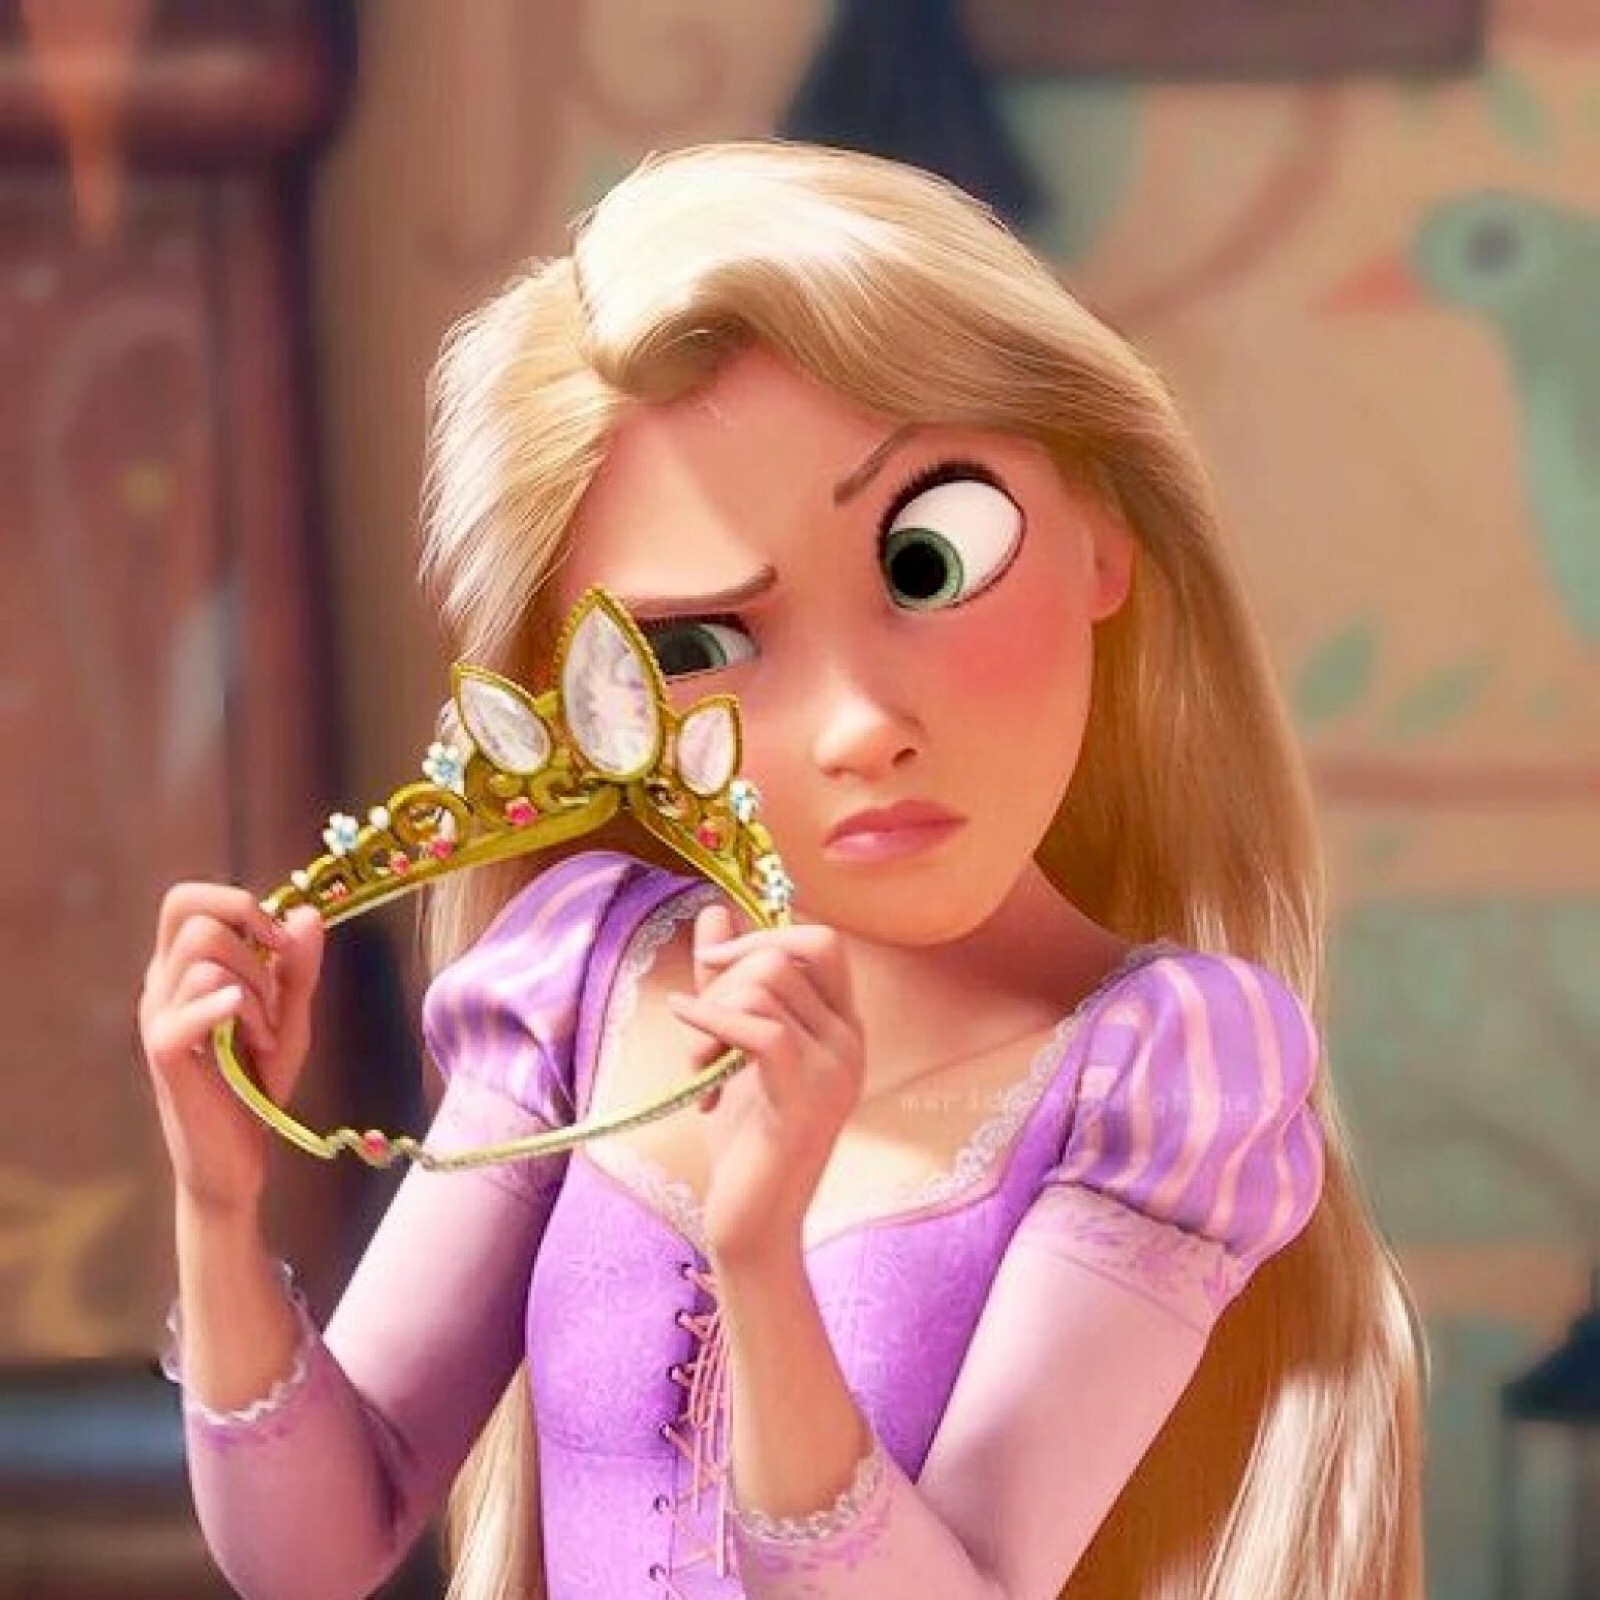 迪士尼公主手绘 可爱公主二期头像图片(2)_配图网